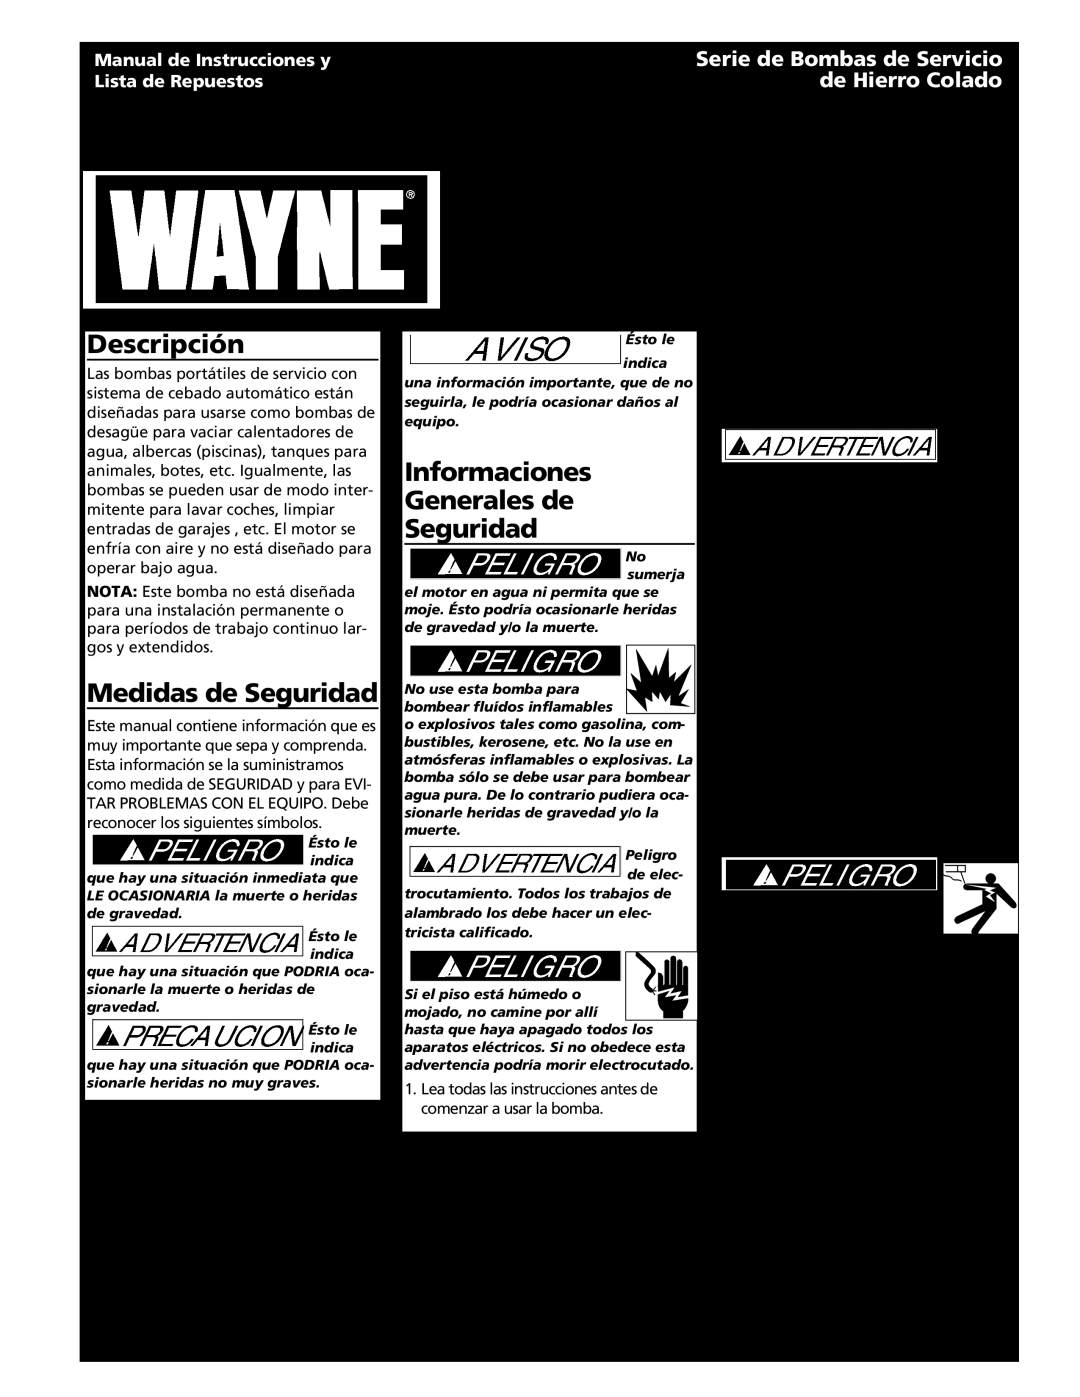 Wayne 321304-001 Descripción, Medidas de Seguridad, Informaciones Generales de Seguridad, Instalación, Especificaciones 